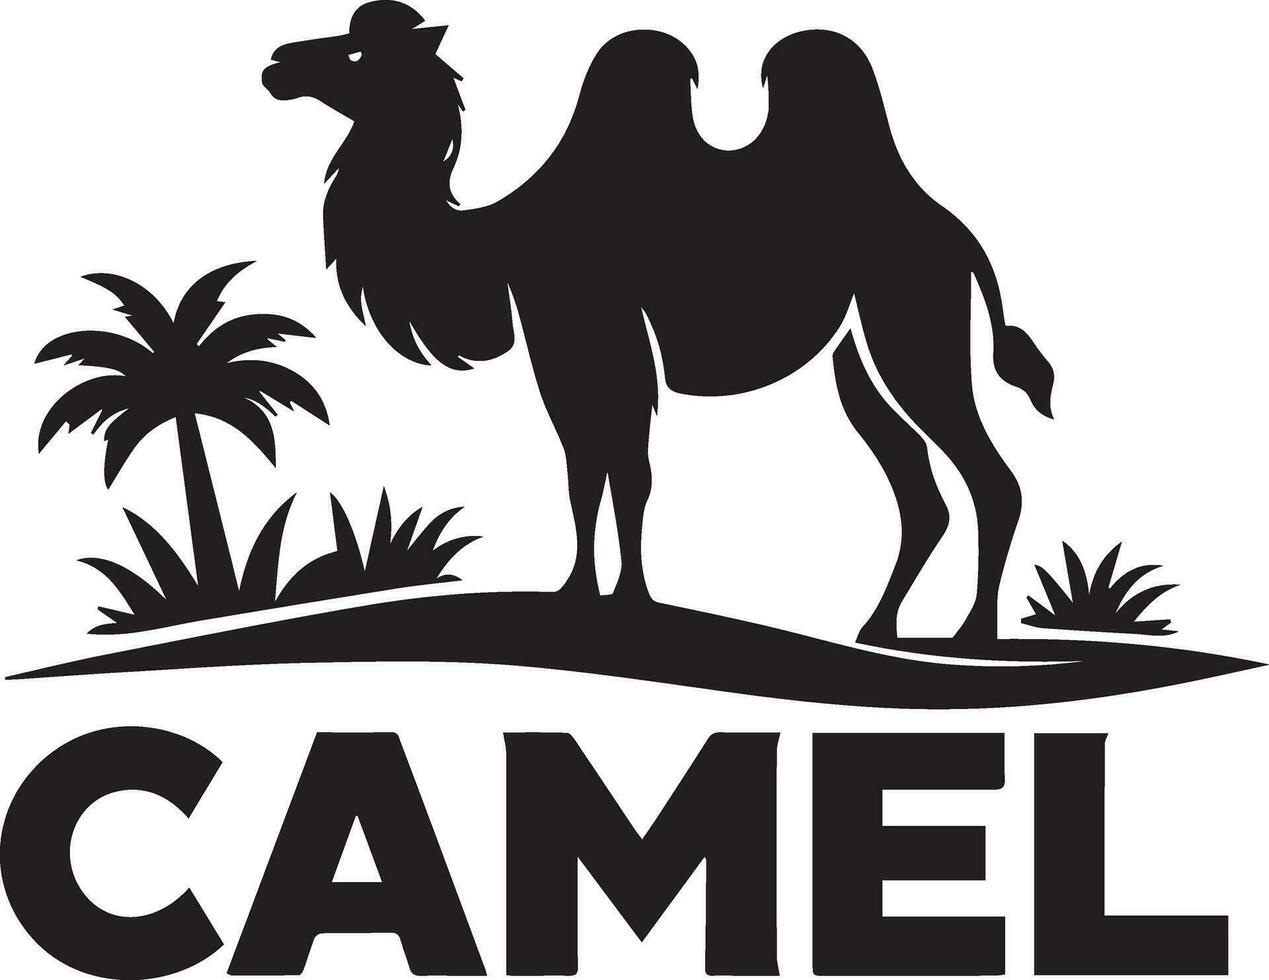 chameau logo vecteur art illustration, chameau logo concept, chameau animal logo silhouette 2